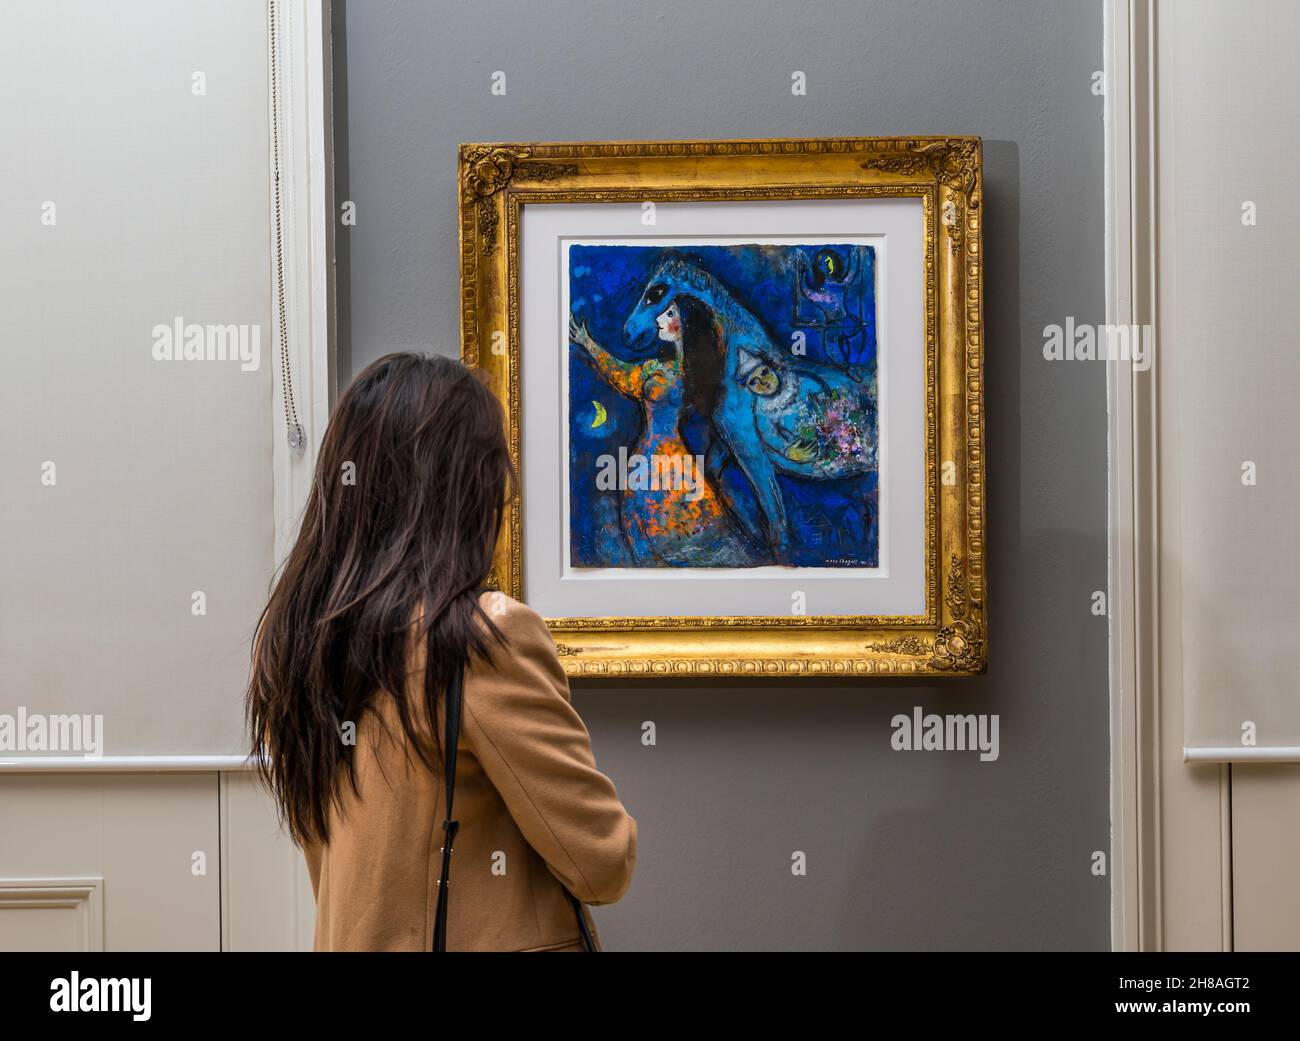 Mujer admirando la pintura del artista francés Marc Chagall llamó a la Galería Nacional Escocesa de Arte Moderno Horse Rider, Edimburgo, Escocia, Reino Unido Foto de stock